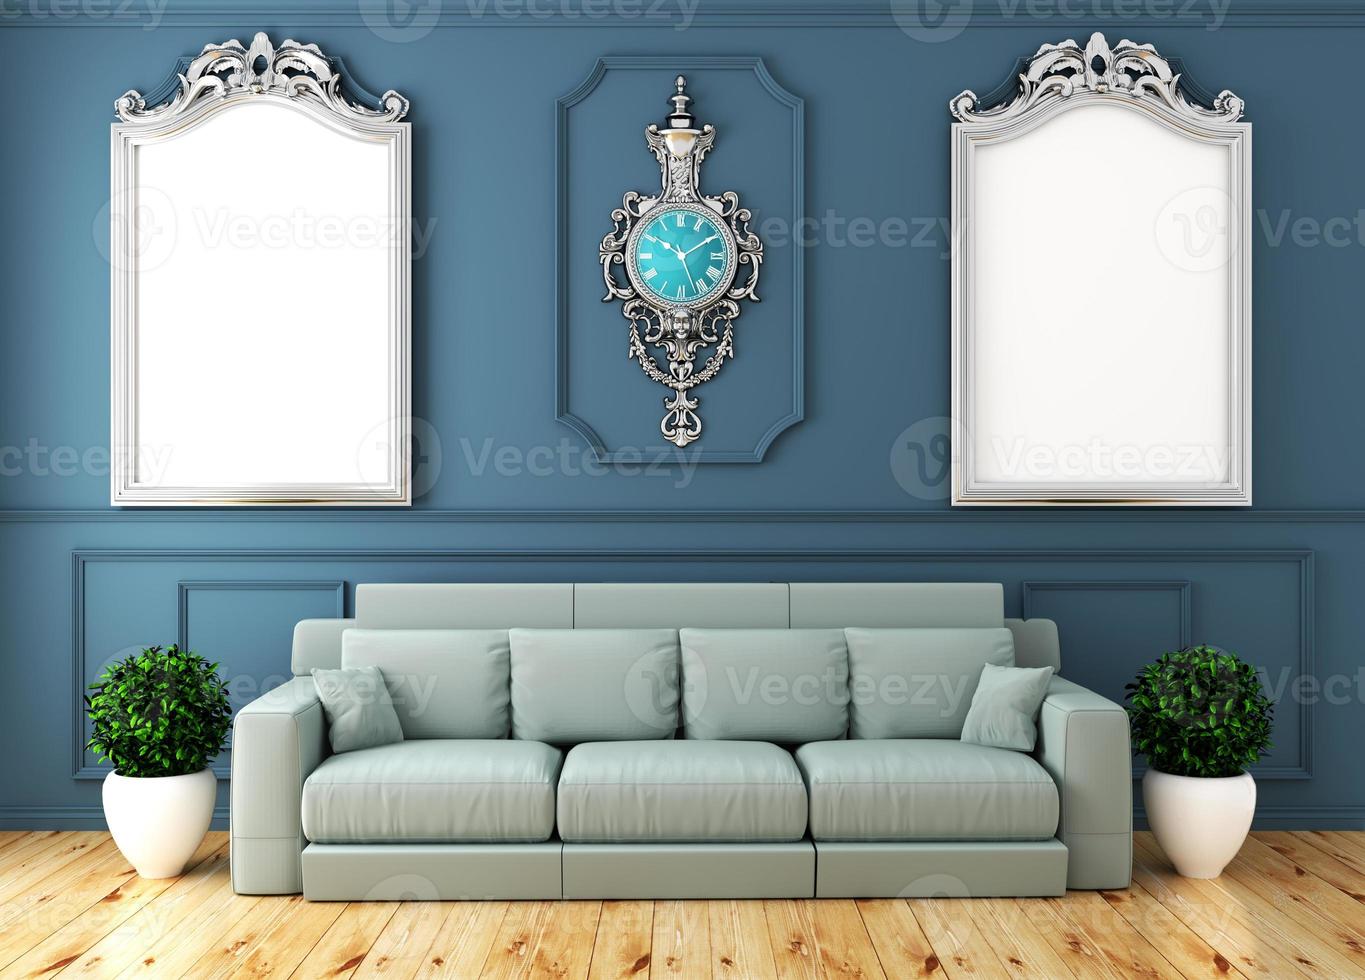 lege luxe kamer interieur met sofa in kamer blauwe muur op houten vloer. 3D-rendering foto